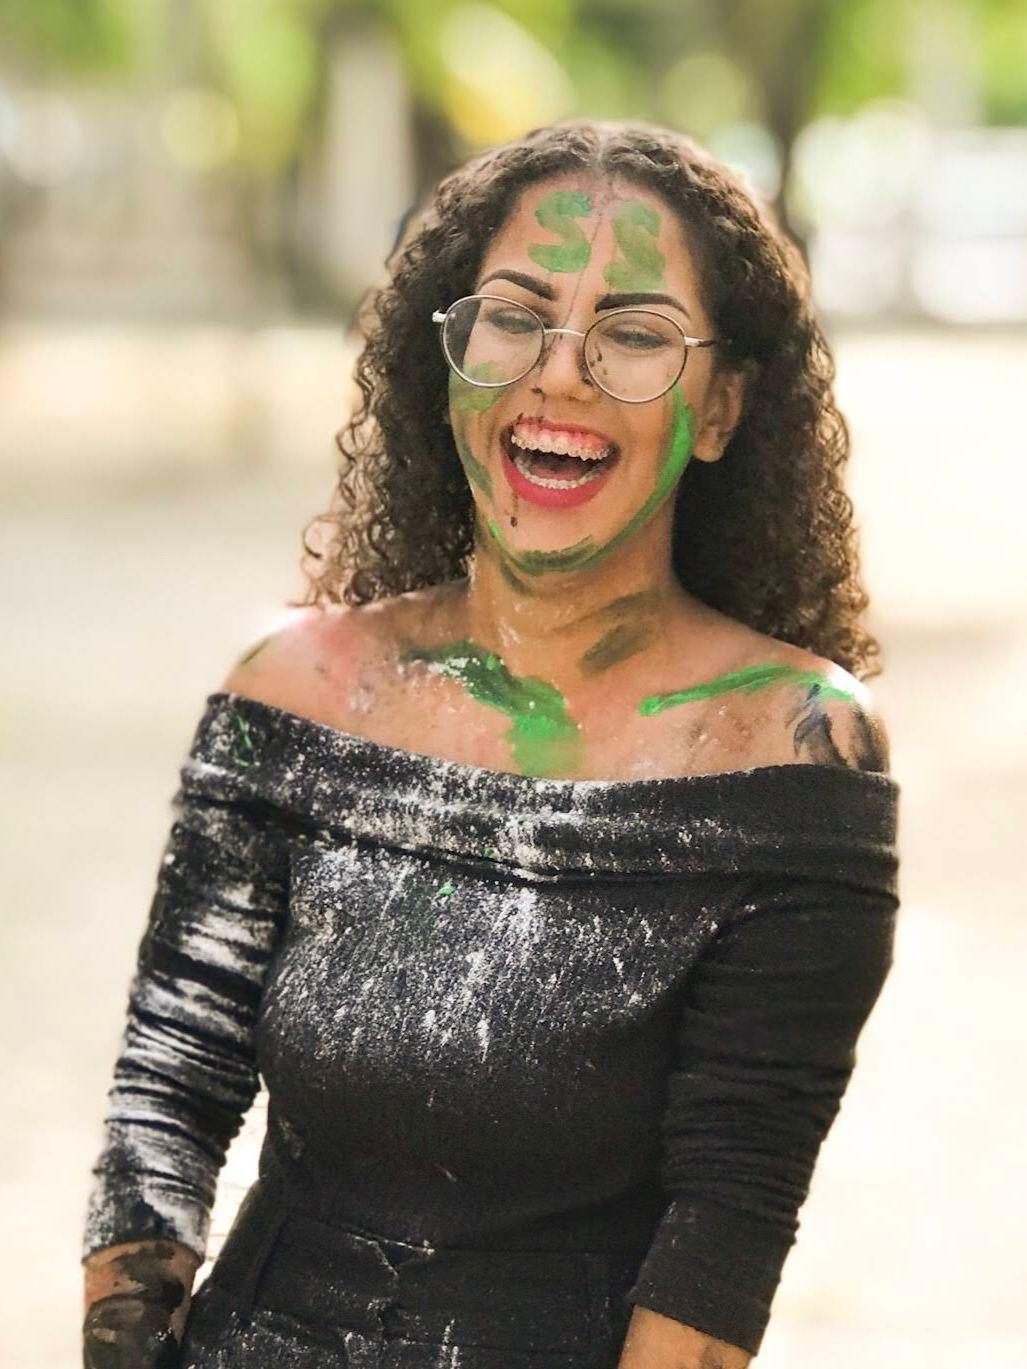 Jordana Dias, estudante cearense, aparece sorrindo, com rosto pintado, no trote universitário